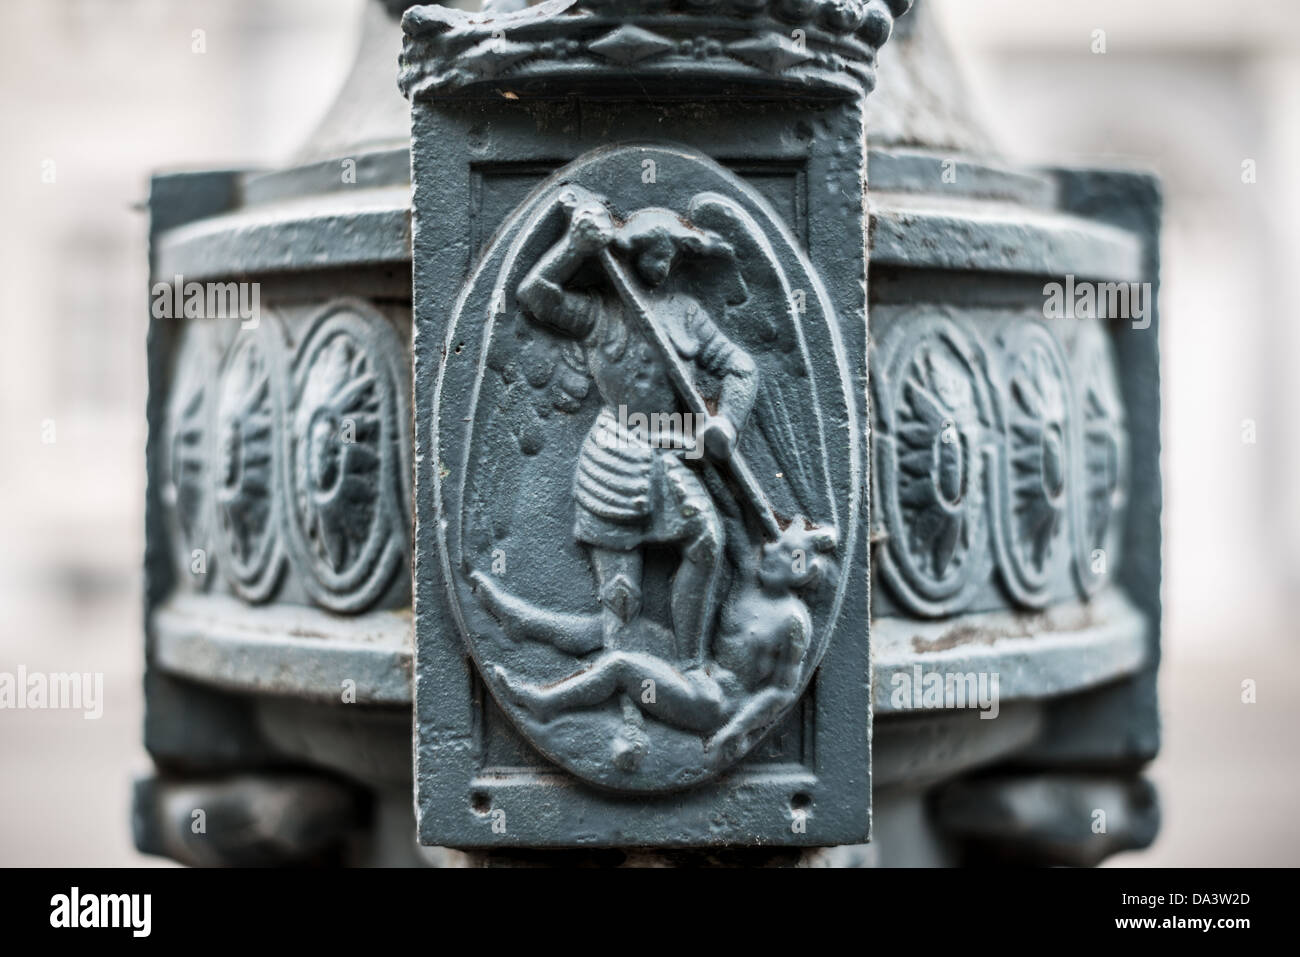 Bruxelles, Belgio - Una rappresentazione artistica di una leggenda belga sulla base di un lampione nel Quartiere Reale di Bruxelles, Belgio. Foto Stock